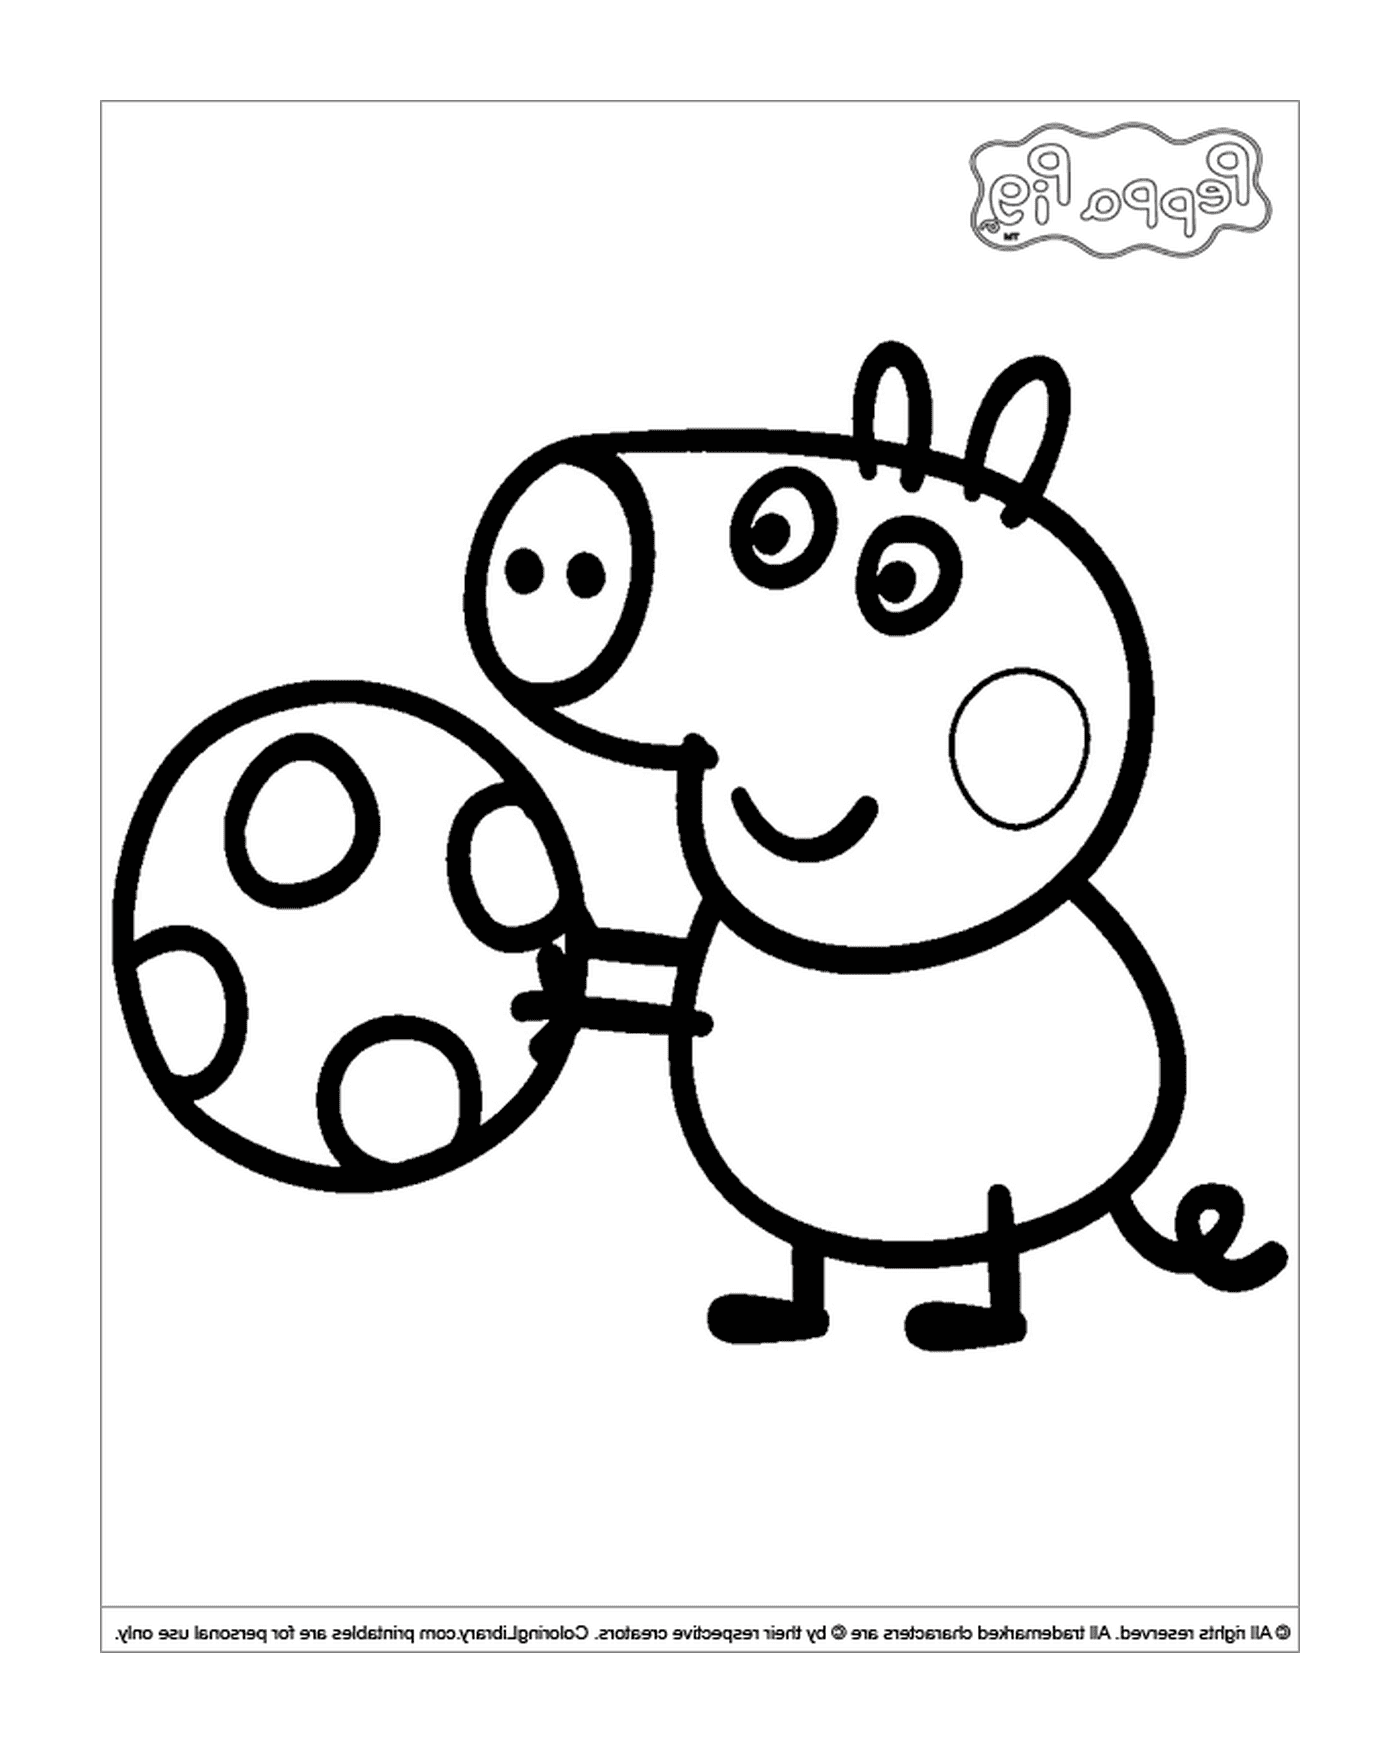  Un maiale con una palla da calcio 